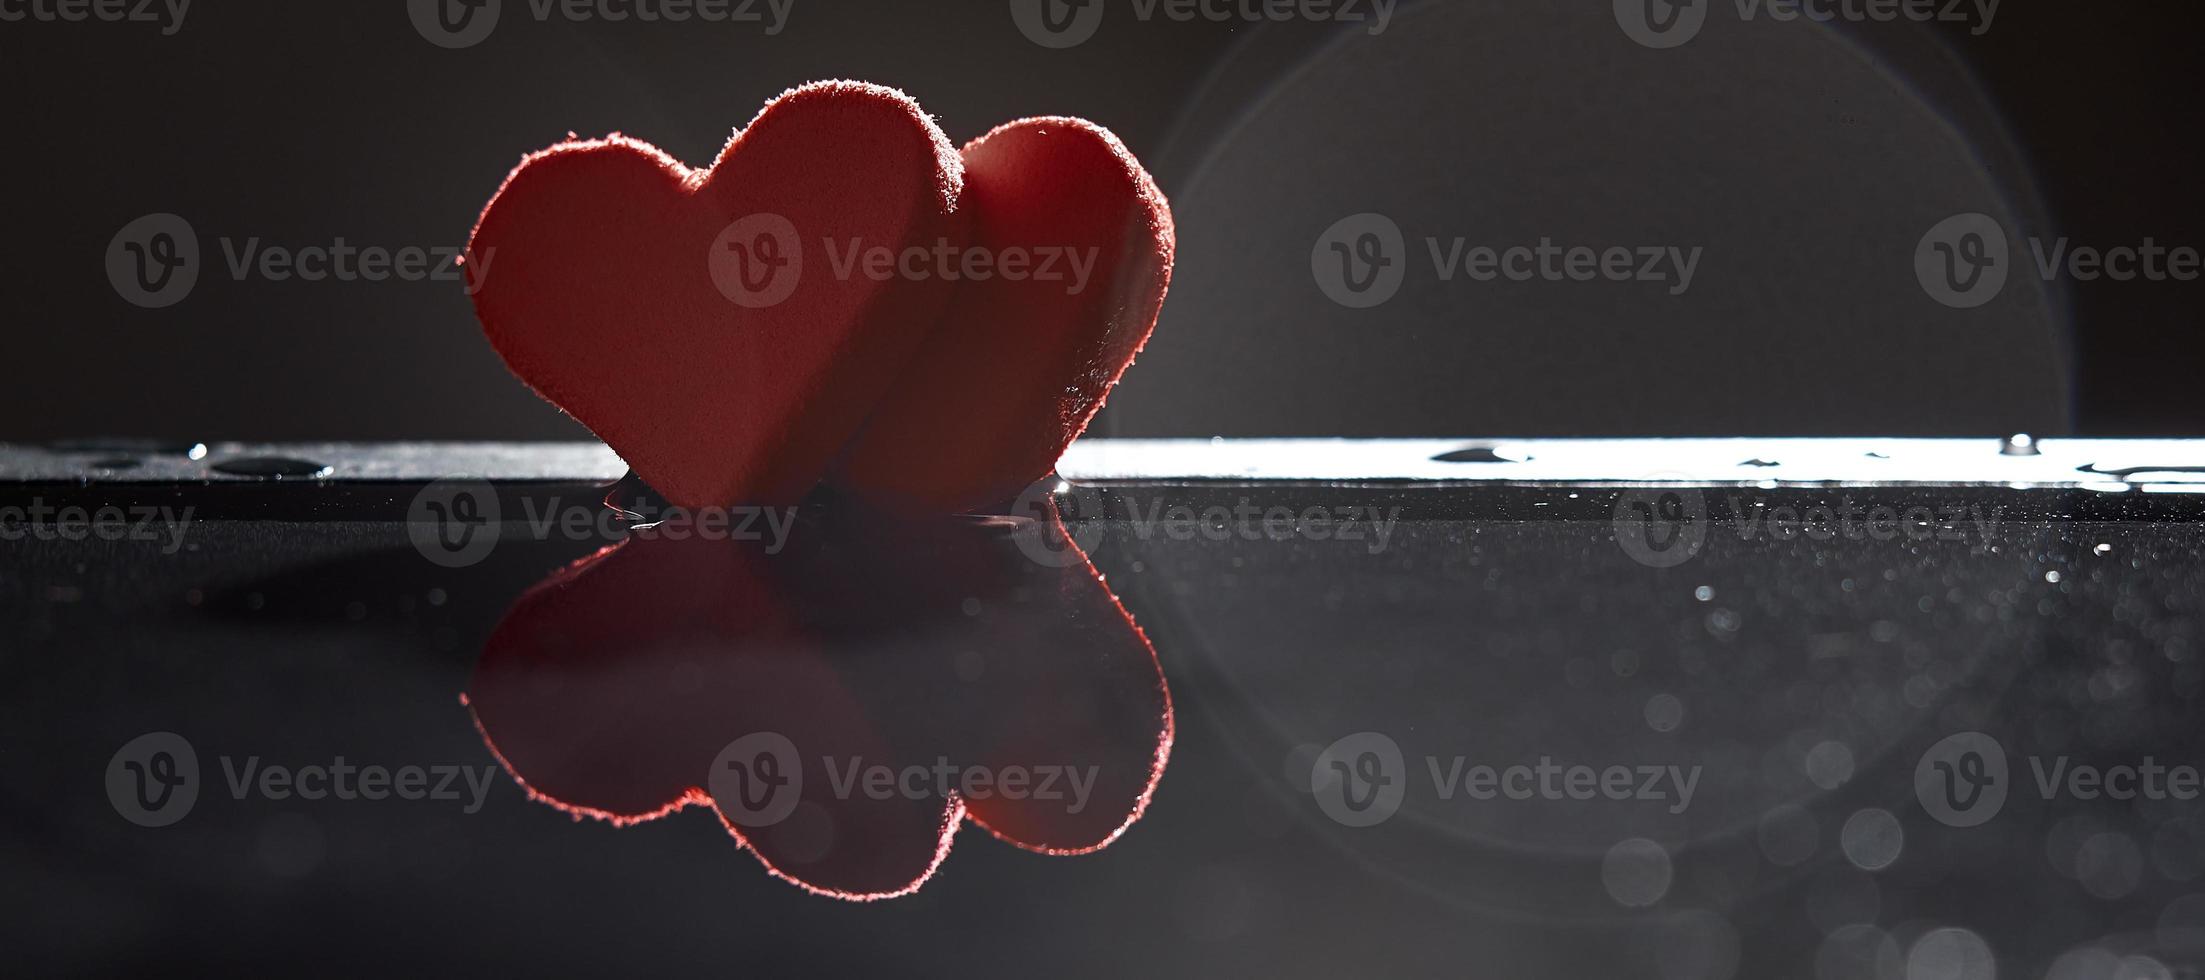 las siluetas de dos corazones rojos se reflejan en el agua sobre un fondo oscuro con un bokeh. foto con espacio de copia.